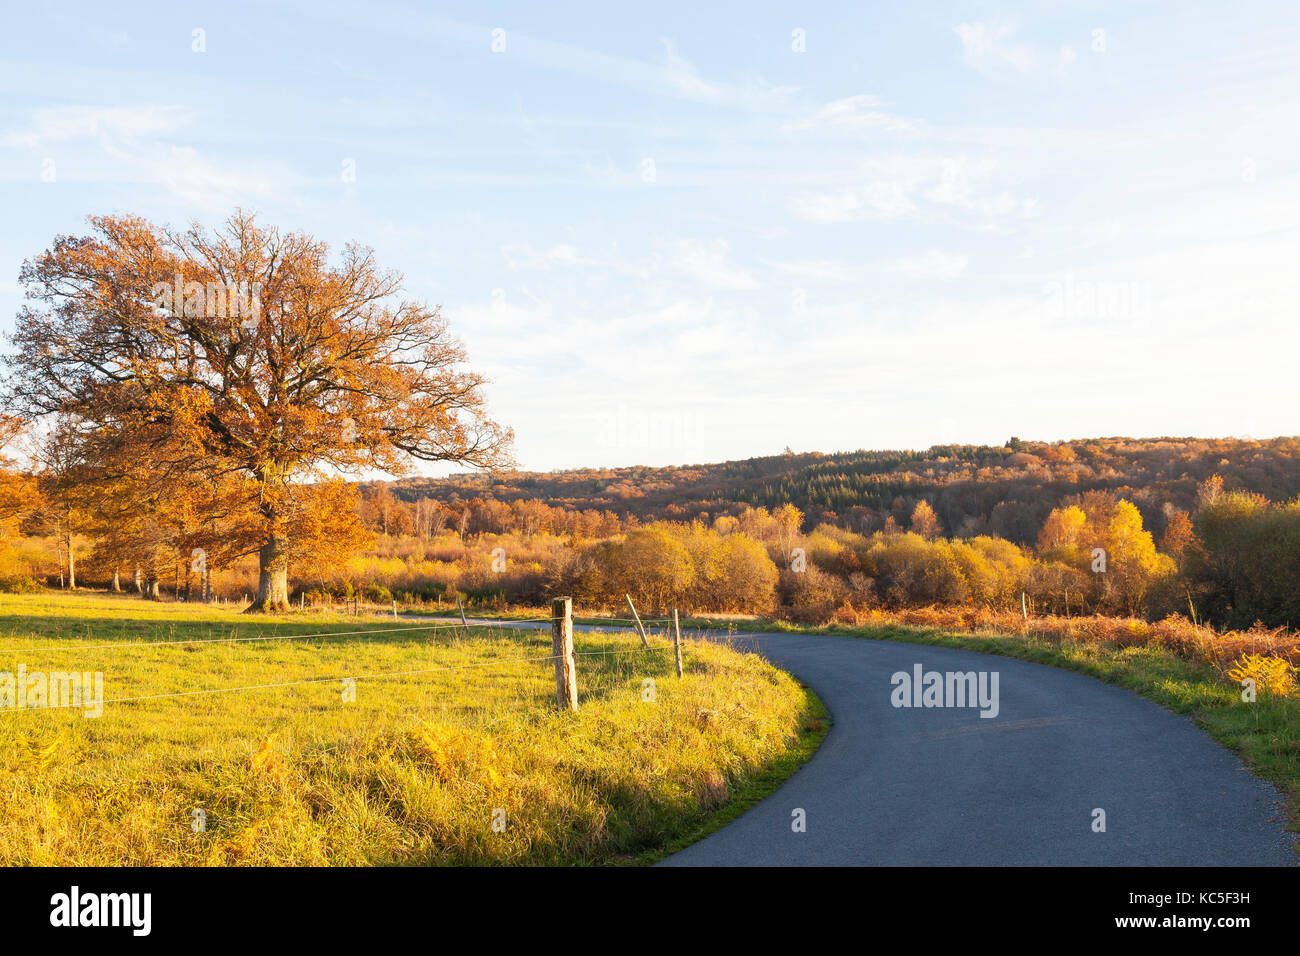 Eiche mit Blätter im Herbst in einer Kurve bei Sonnenuntergang mit warmem Licht während der Goldenen Stunde auf Ackerland und Hügel mit Wald im Herbst Farben Cre Stockfoto